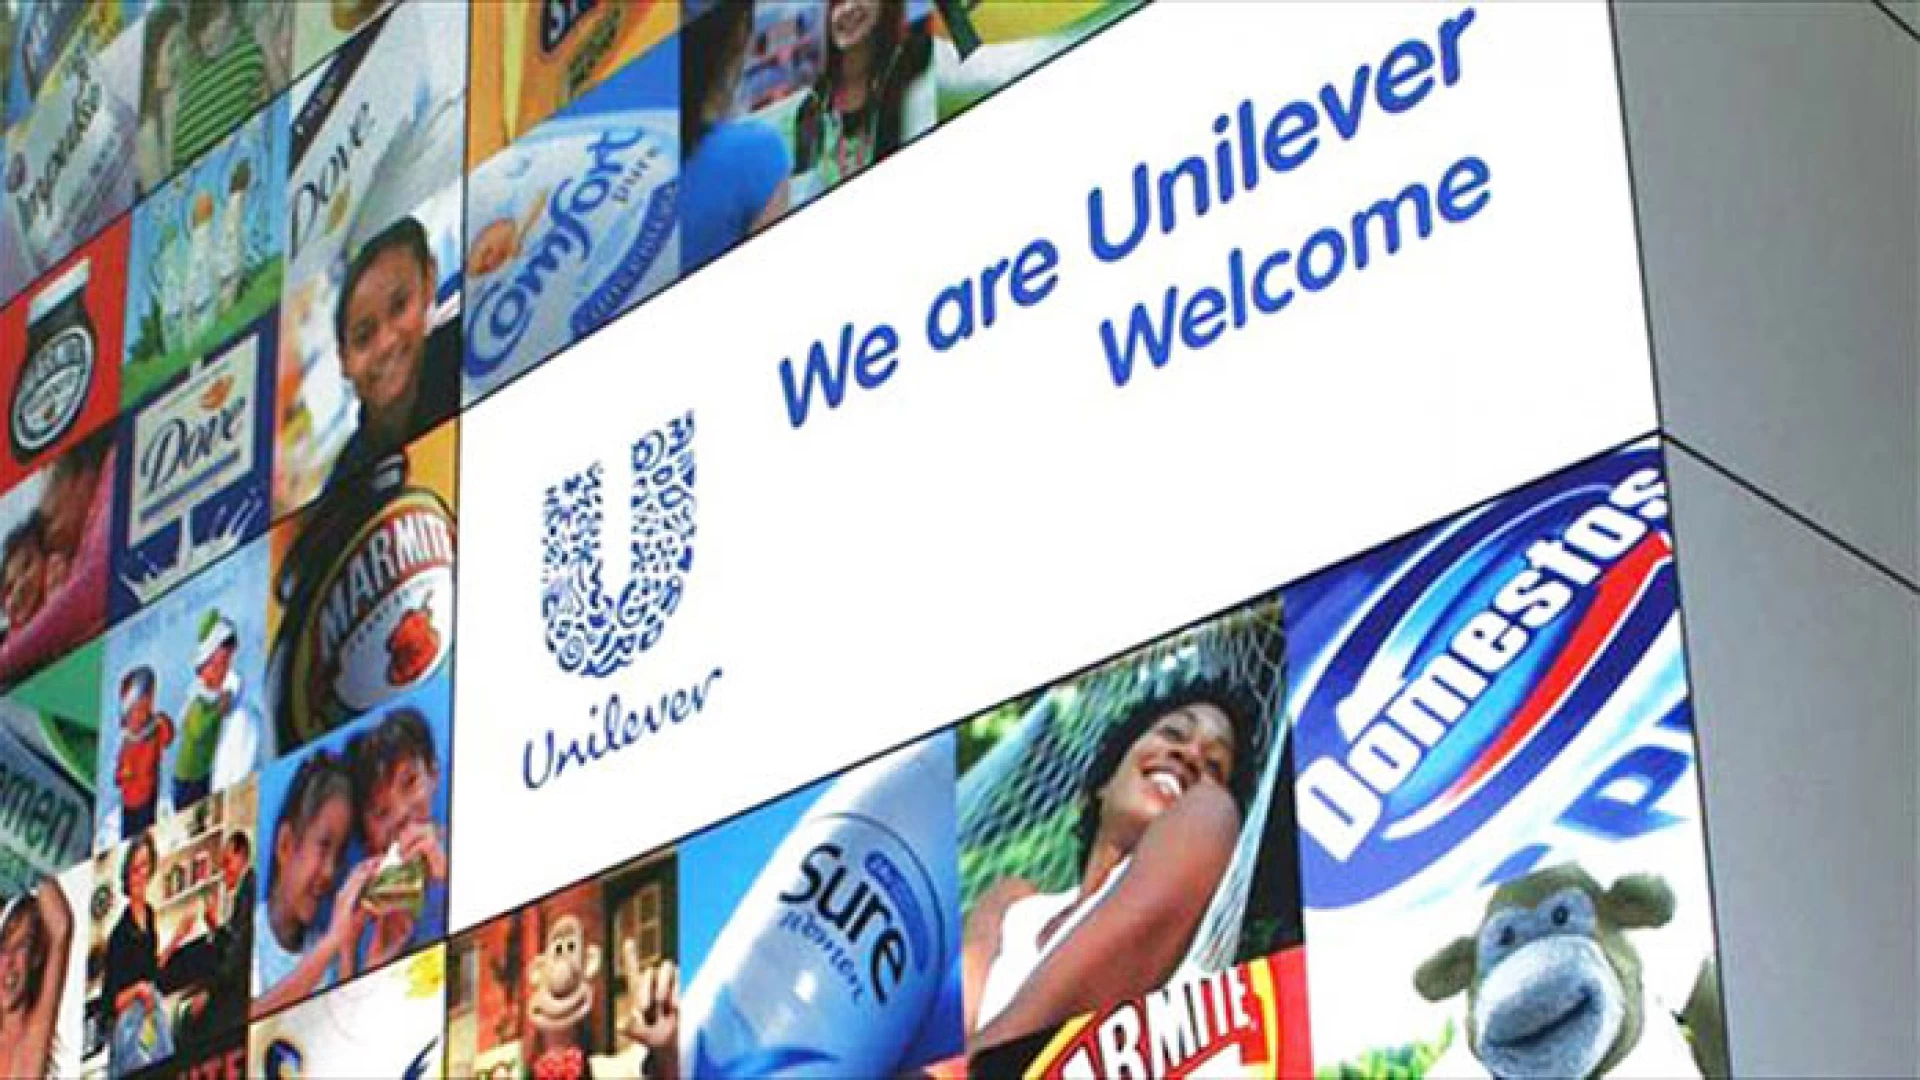 Futuro Unilever di Pozzilli. L'azienda avvia le procedure per il contratto di espansione. La nota delle Rsu aziendali